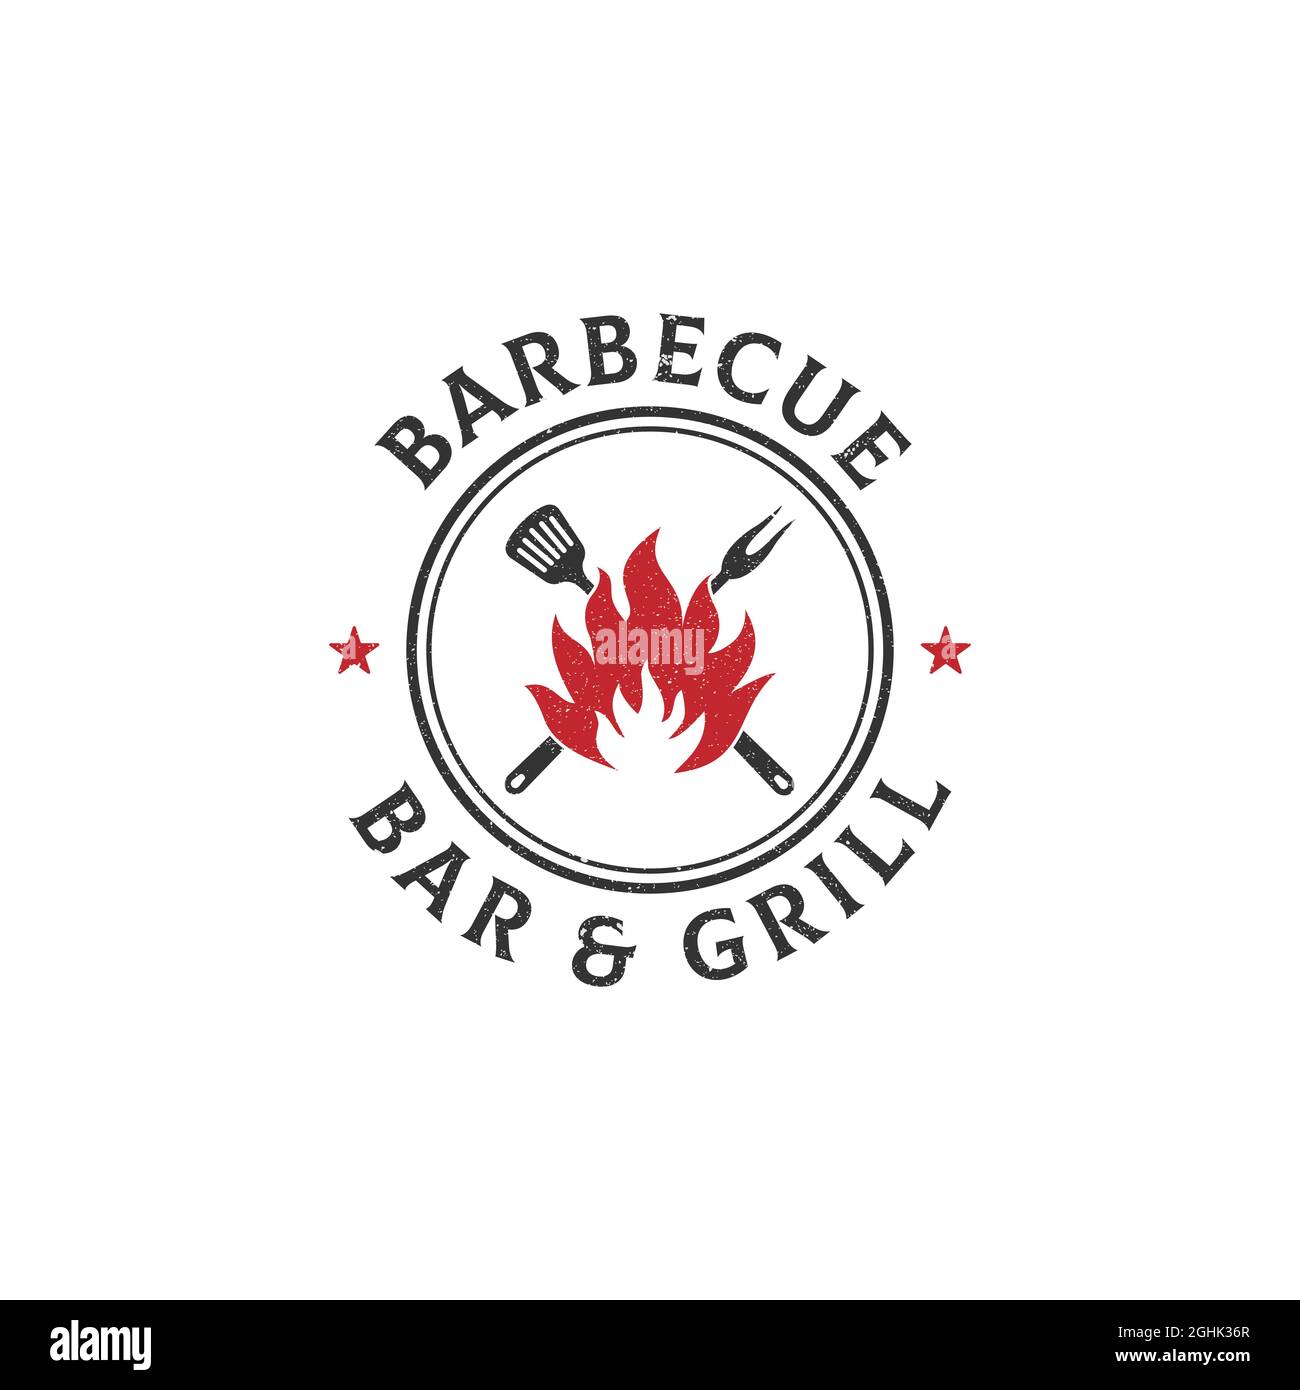 motif vintage grunge barbecue logo, bar et dessin vectoriel de grill avec style rustique Illustration de Vecteur